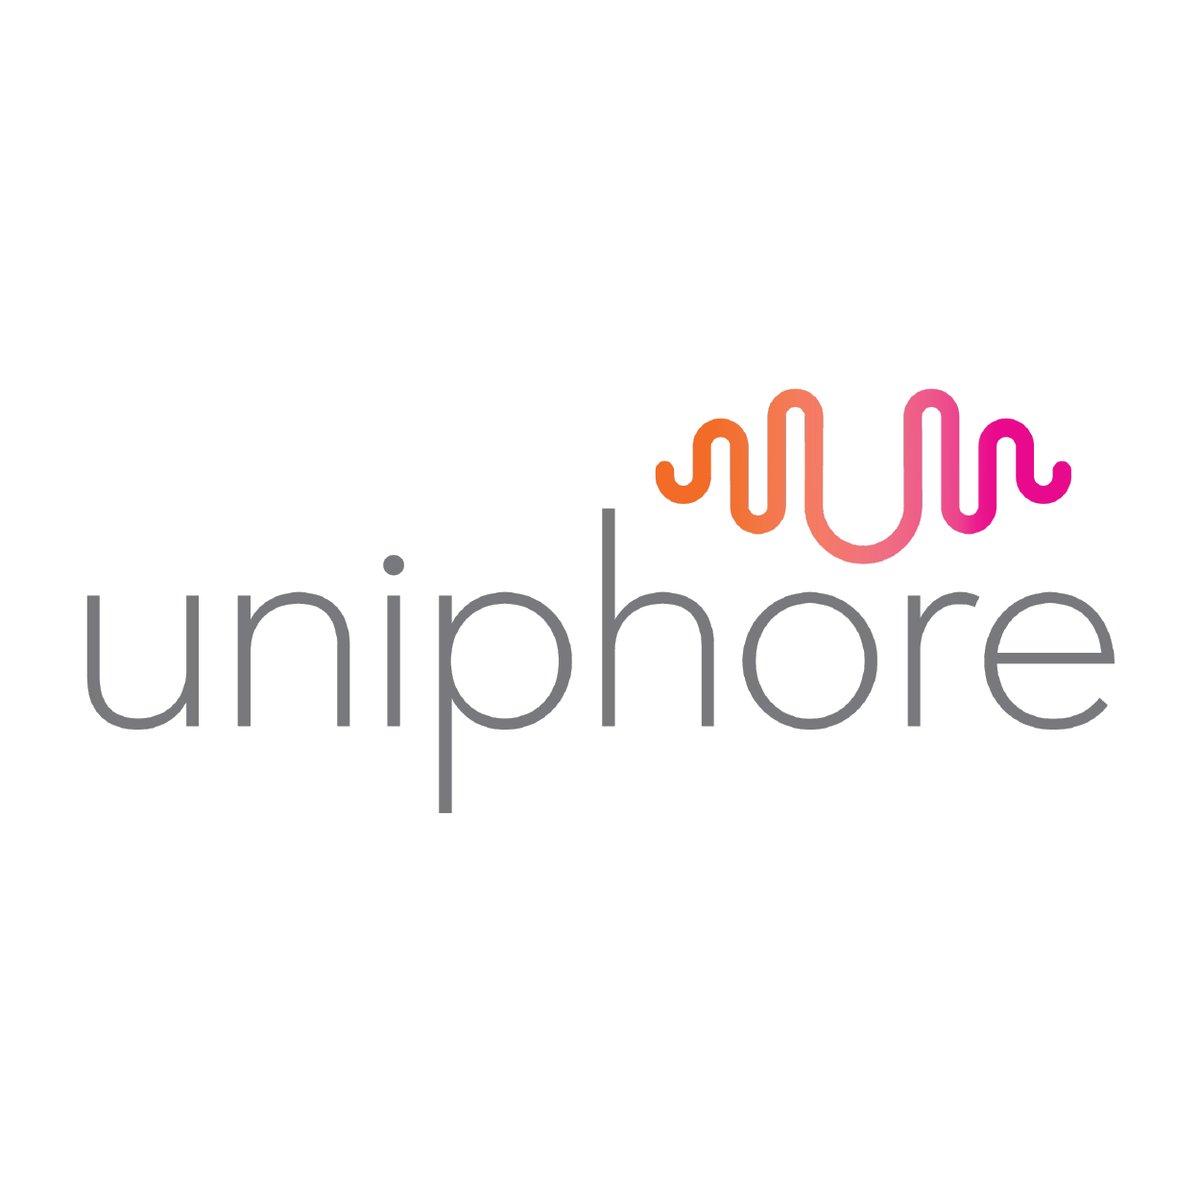 Uniphore-01